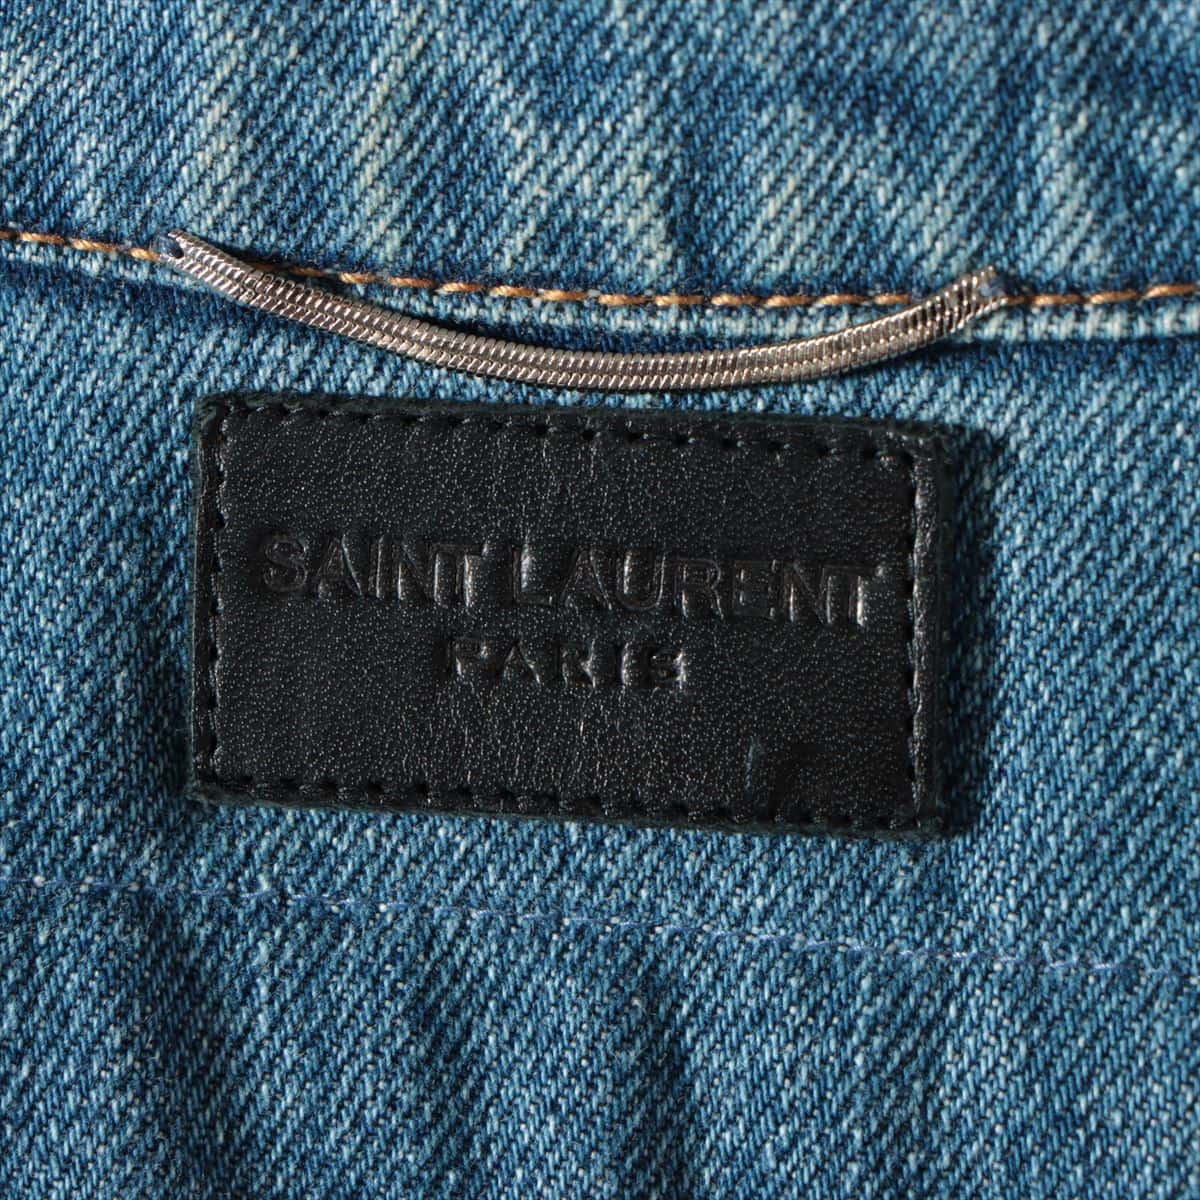 Saint Laurent Paris 16 years Cotton Denim jacket XS Men's Blue  Damage processing